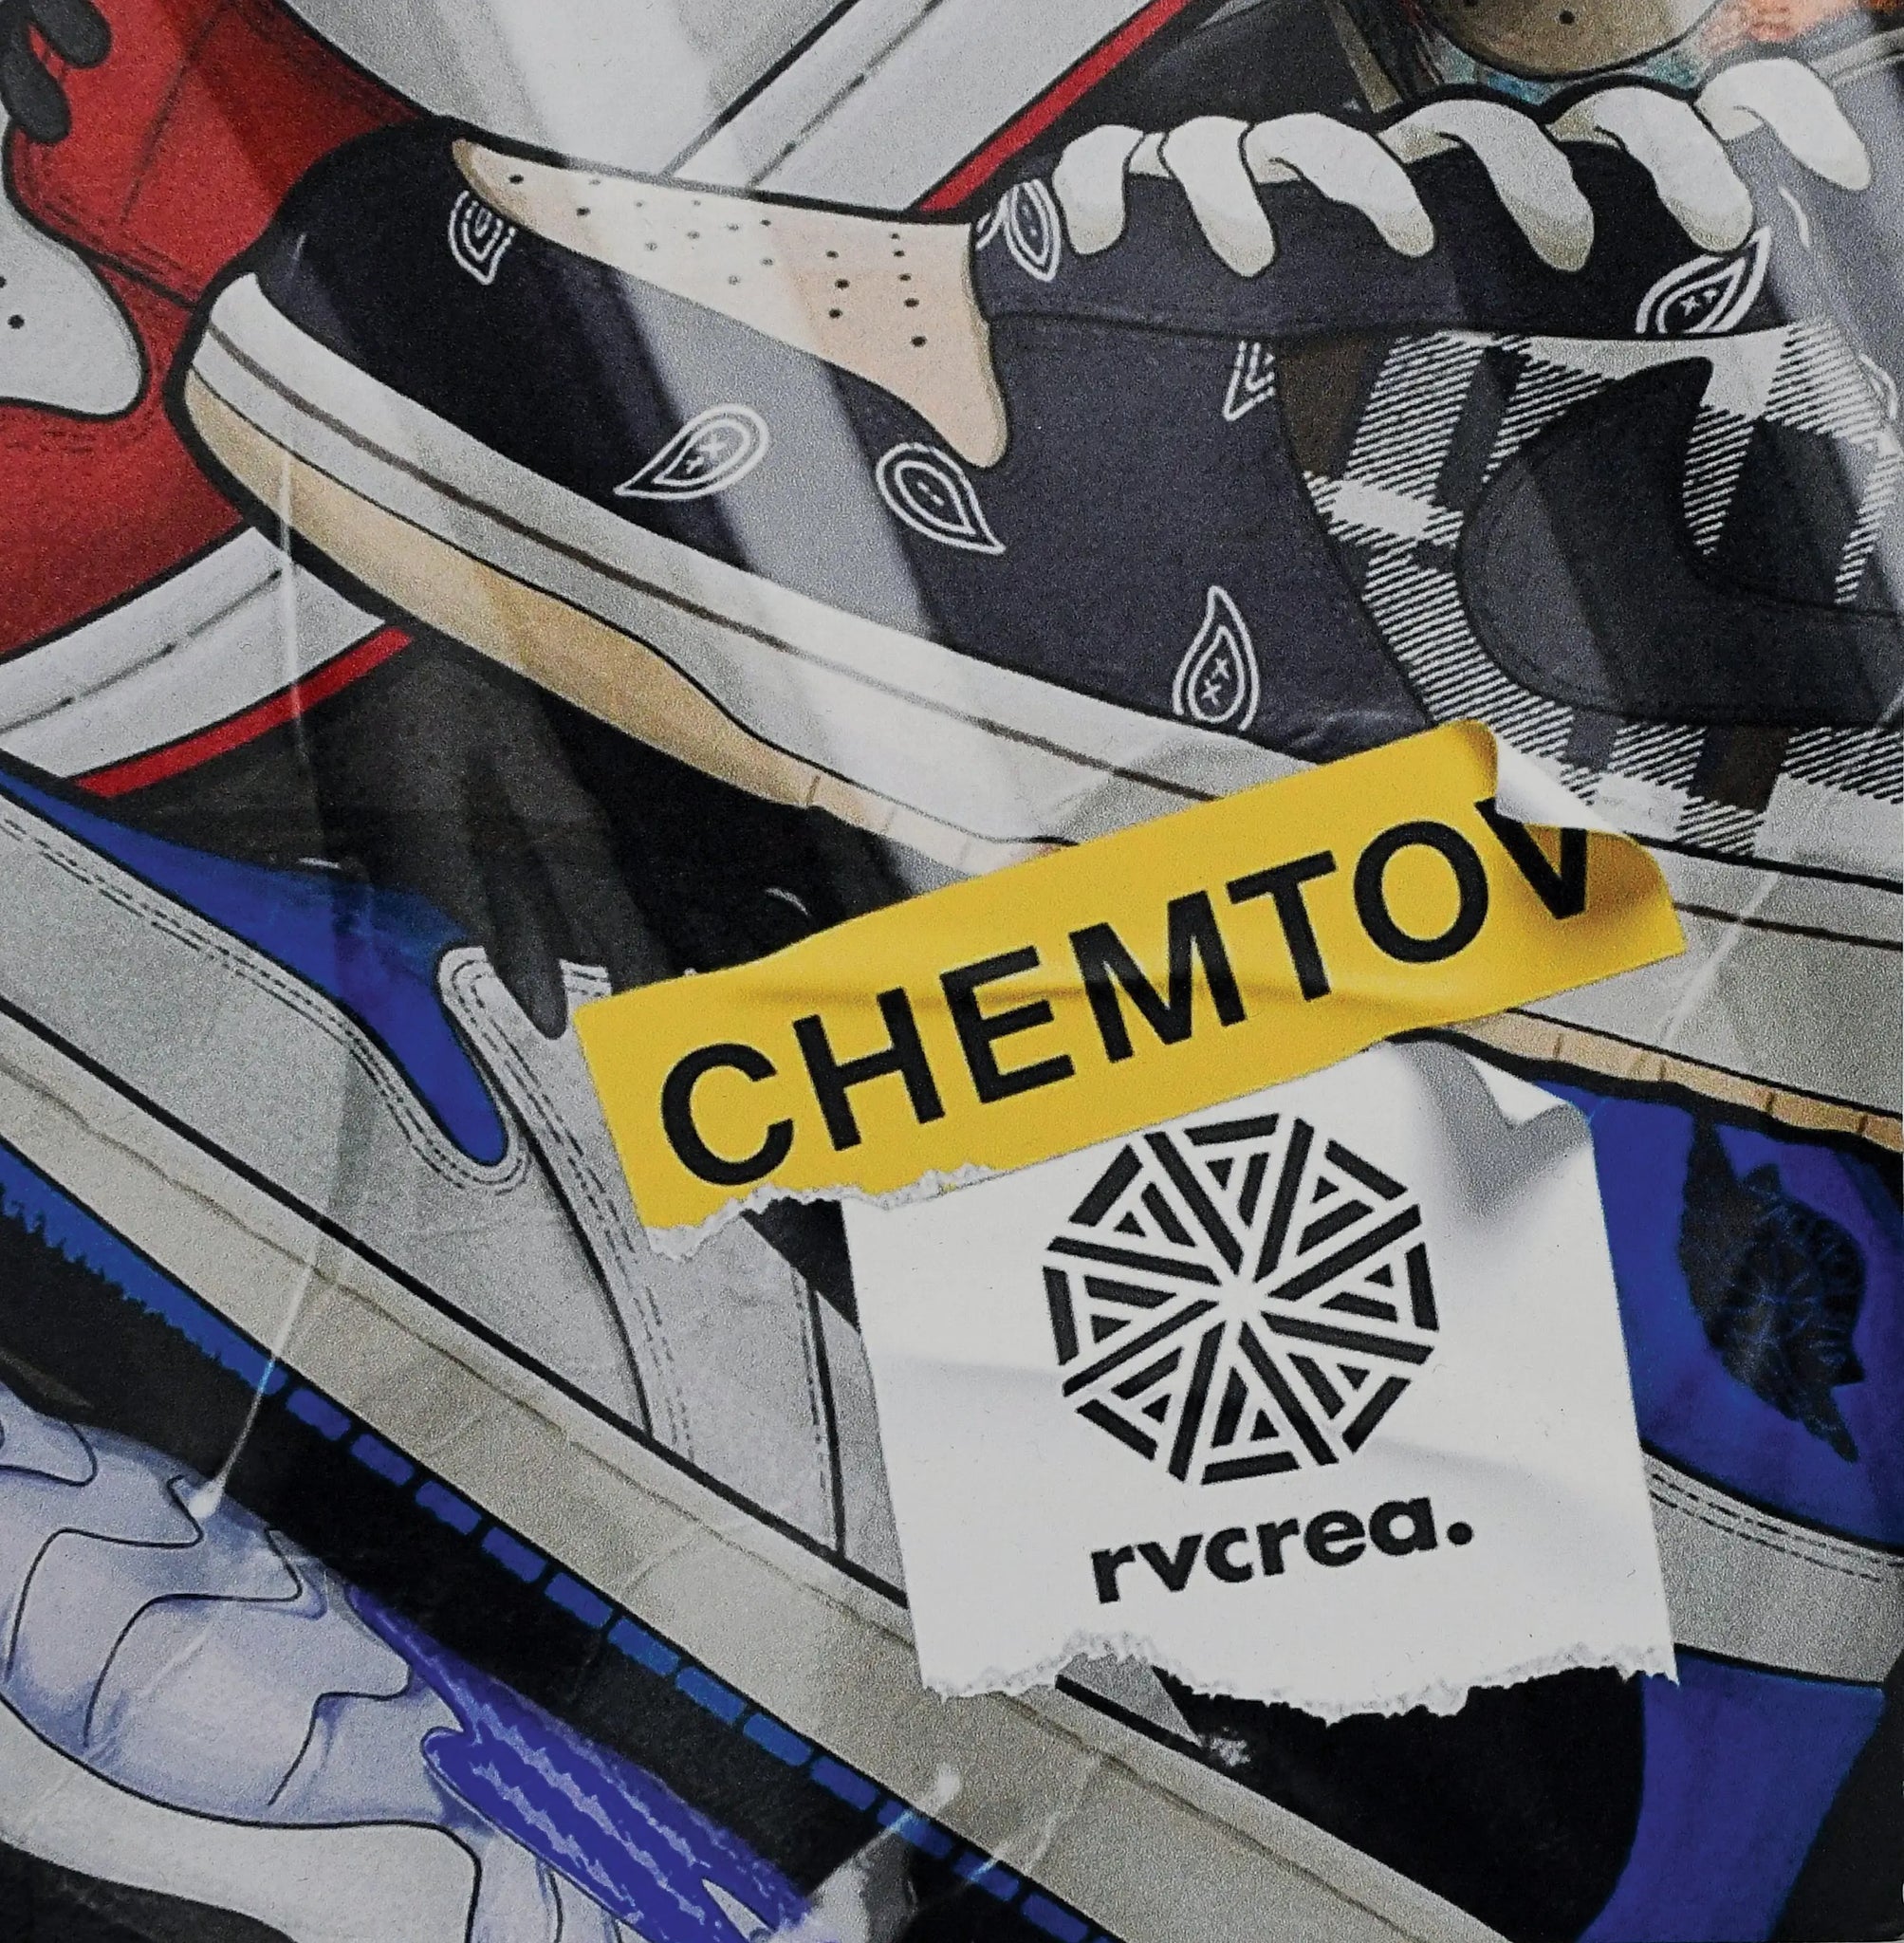 TABLEAU ALUMINIUM - AUTHENTICITY IS THE KEY Chemtov Chemtov-shop achetez les meilleures sneakers & streetwear